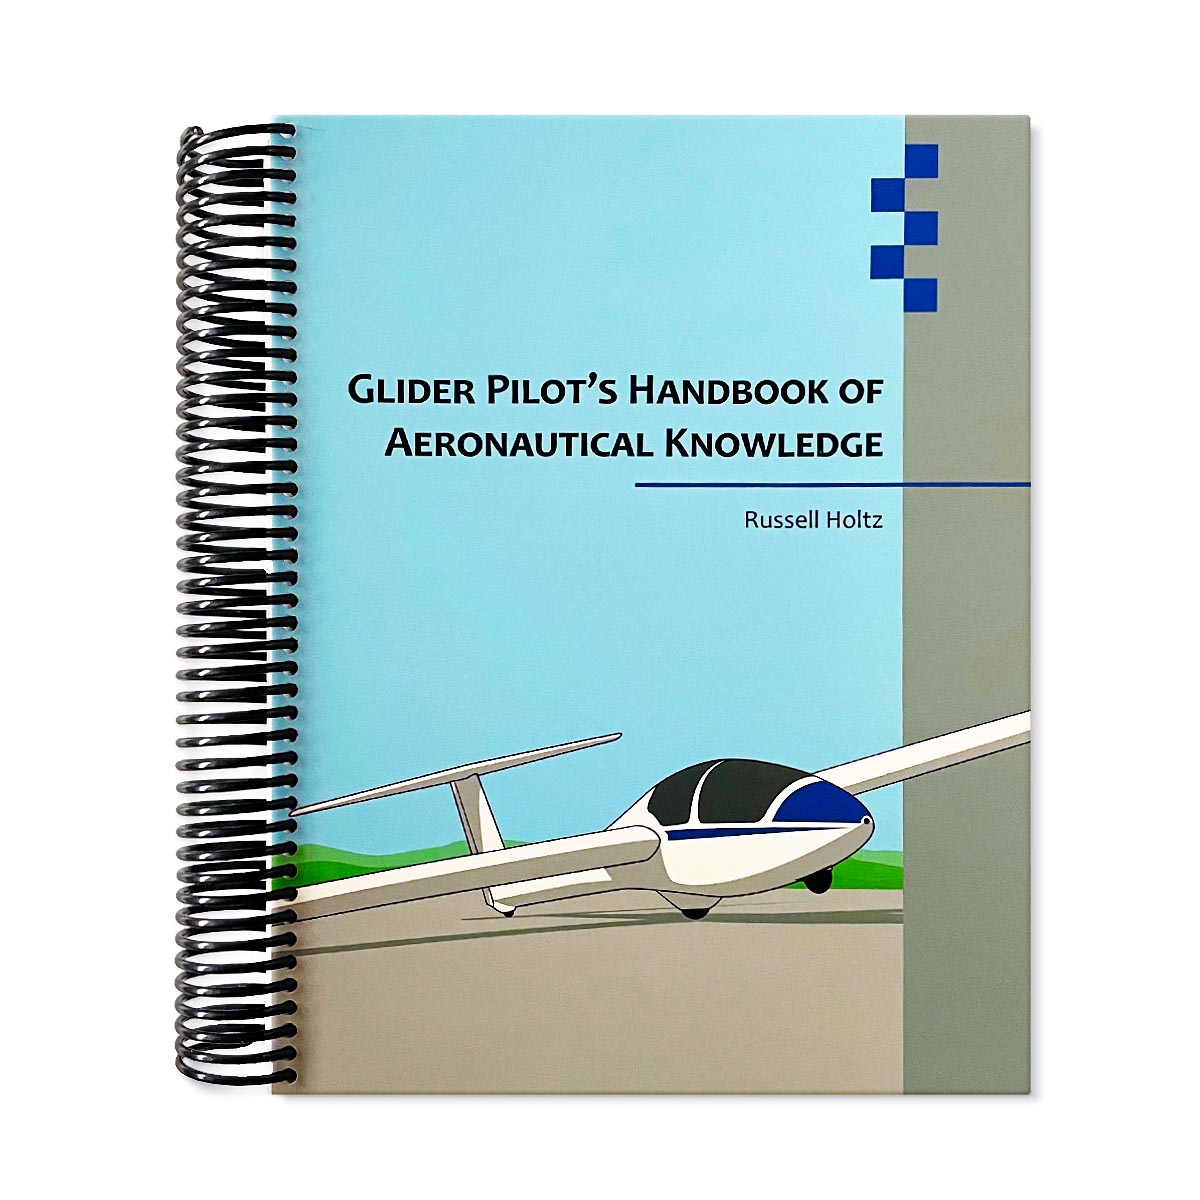 Glider Pilot Handbook Of Aeronautical Knowledge By Russel Holtz glider pilot's handbook